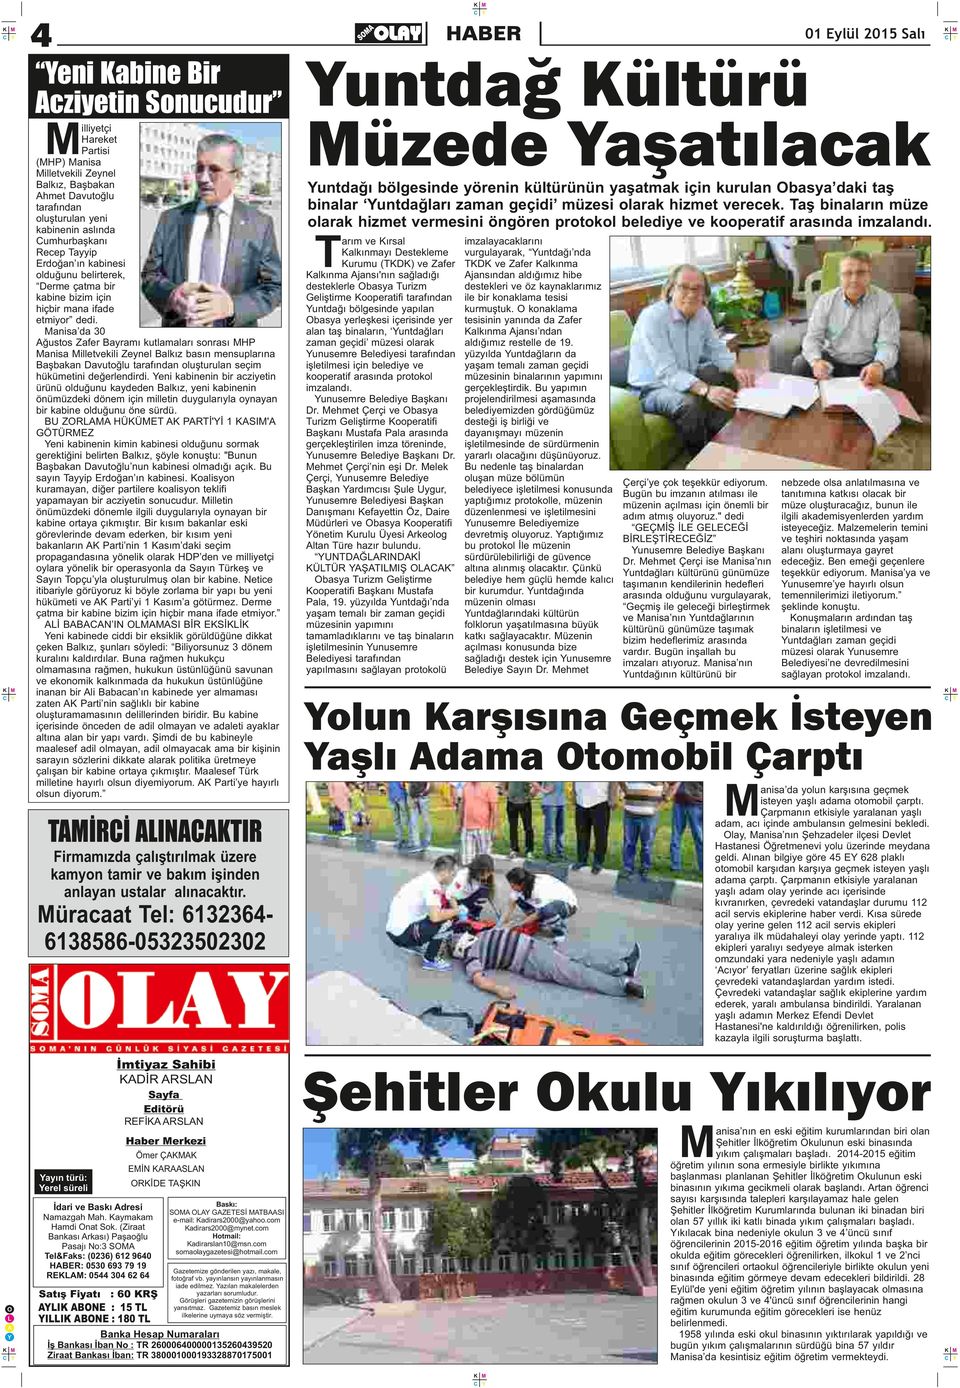 anisa da 30 ğustos Zafer Bayramı kutlamaları sonrası HP anisa illetvekili Zeynel Balkız basın mensuplarına Başbakan Davutoğlu tarafından oluşturulan seçim hükümetini değerlendirdi.